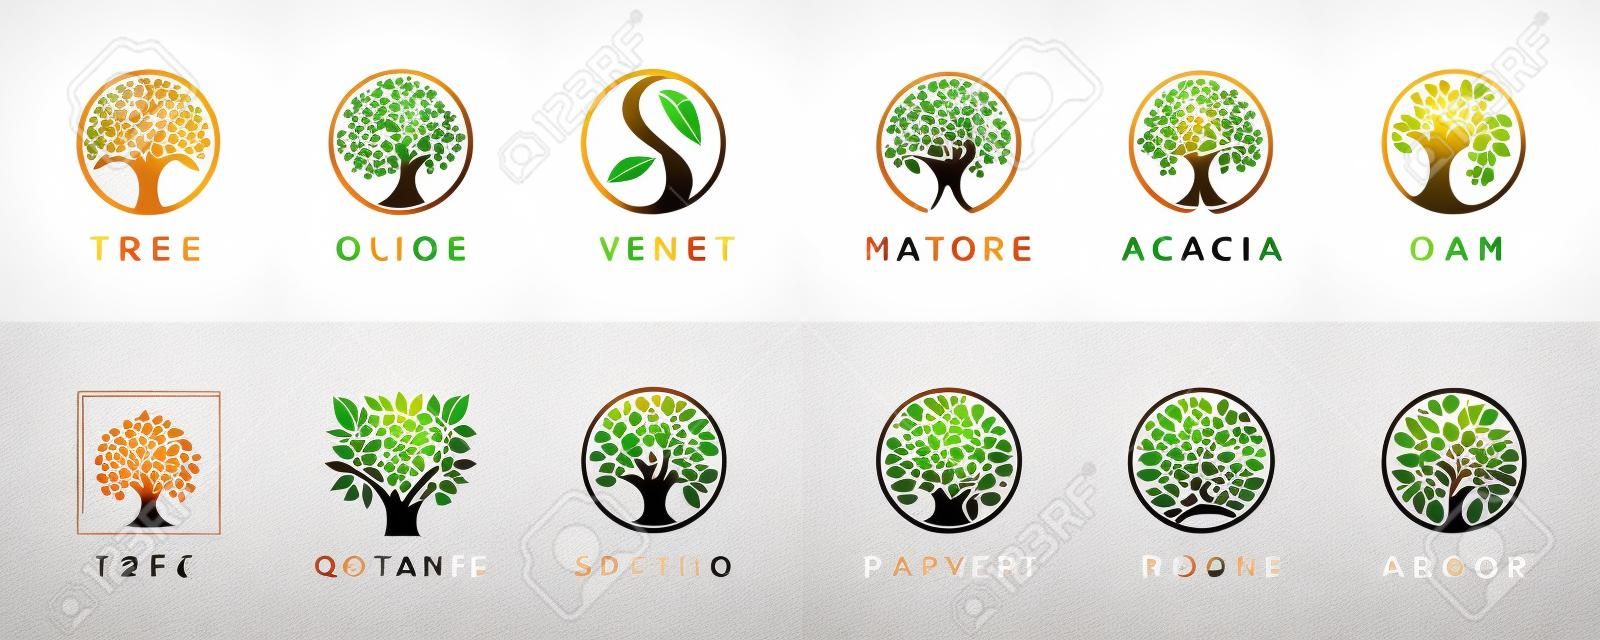 Abstrakte Lebensbaum-Logo-Icons gesetzt. botanische Pflanzennatursymbole. Ast mit Blattzeichen. natürliche designelemente emblem sammlung. Vektor-Illustration.